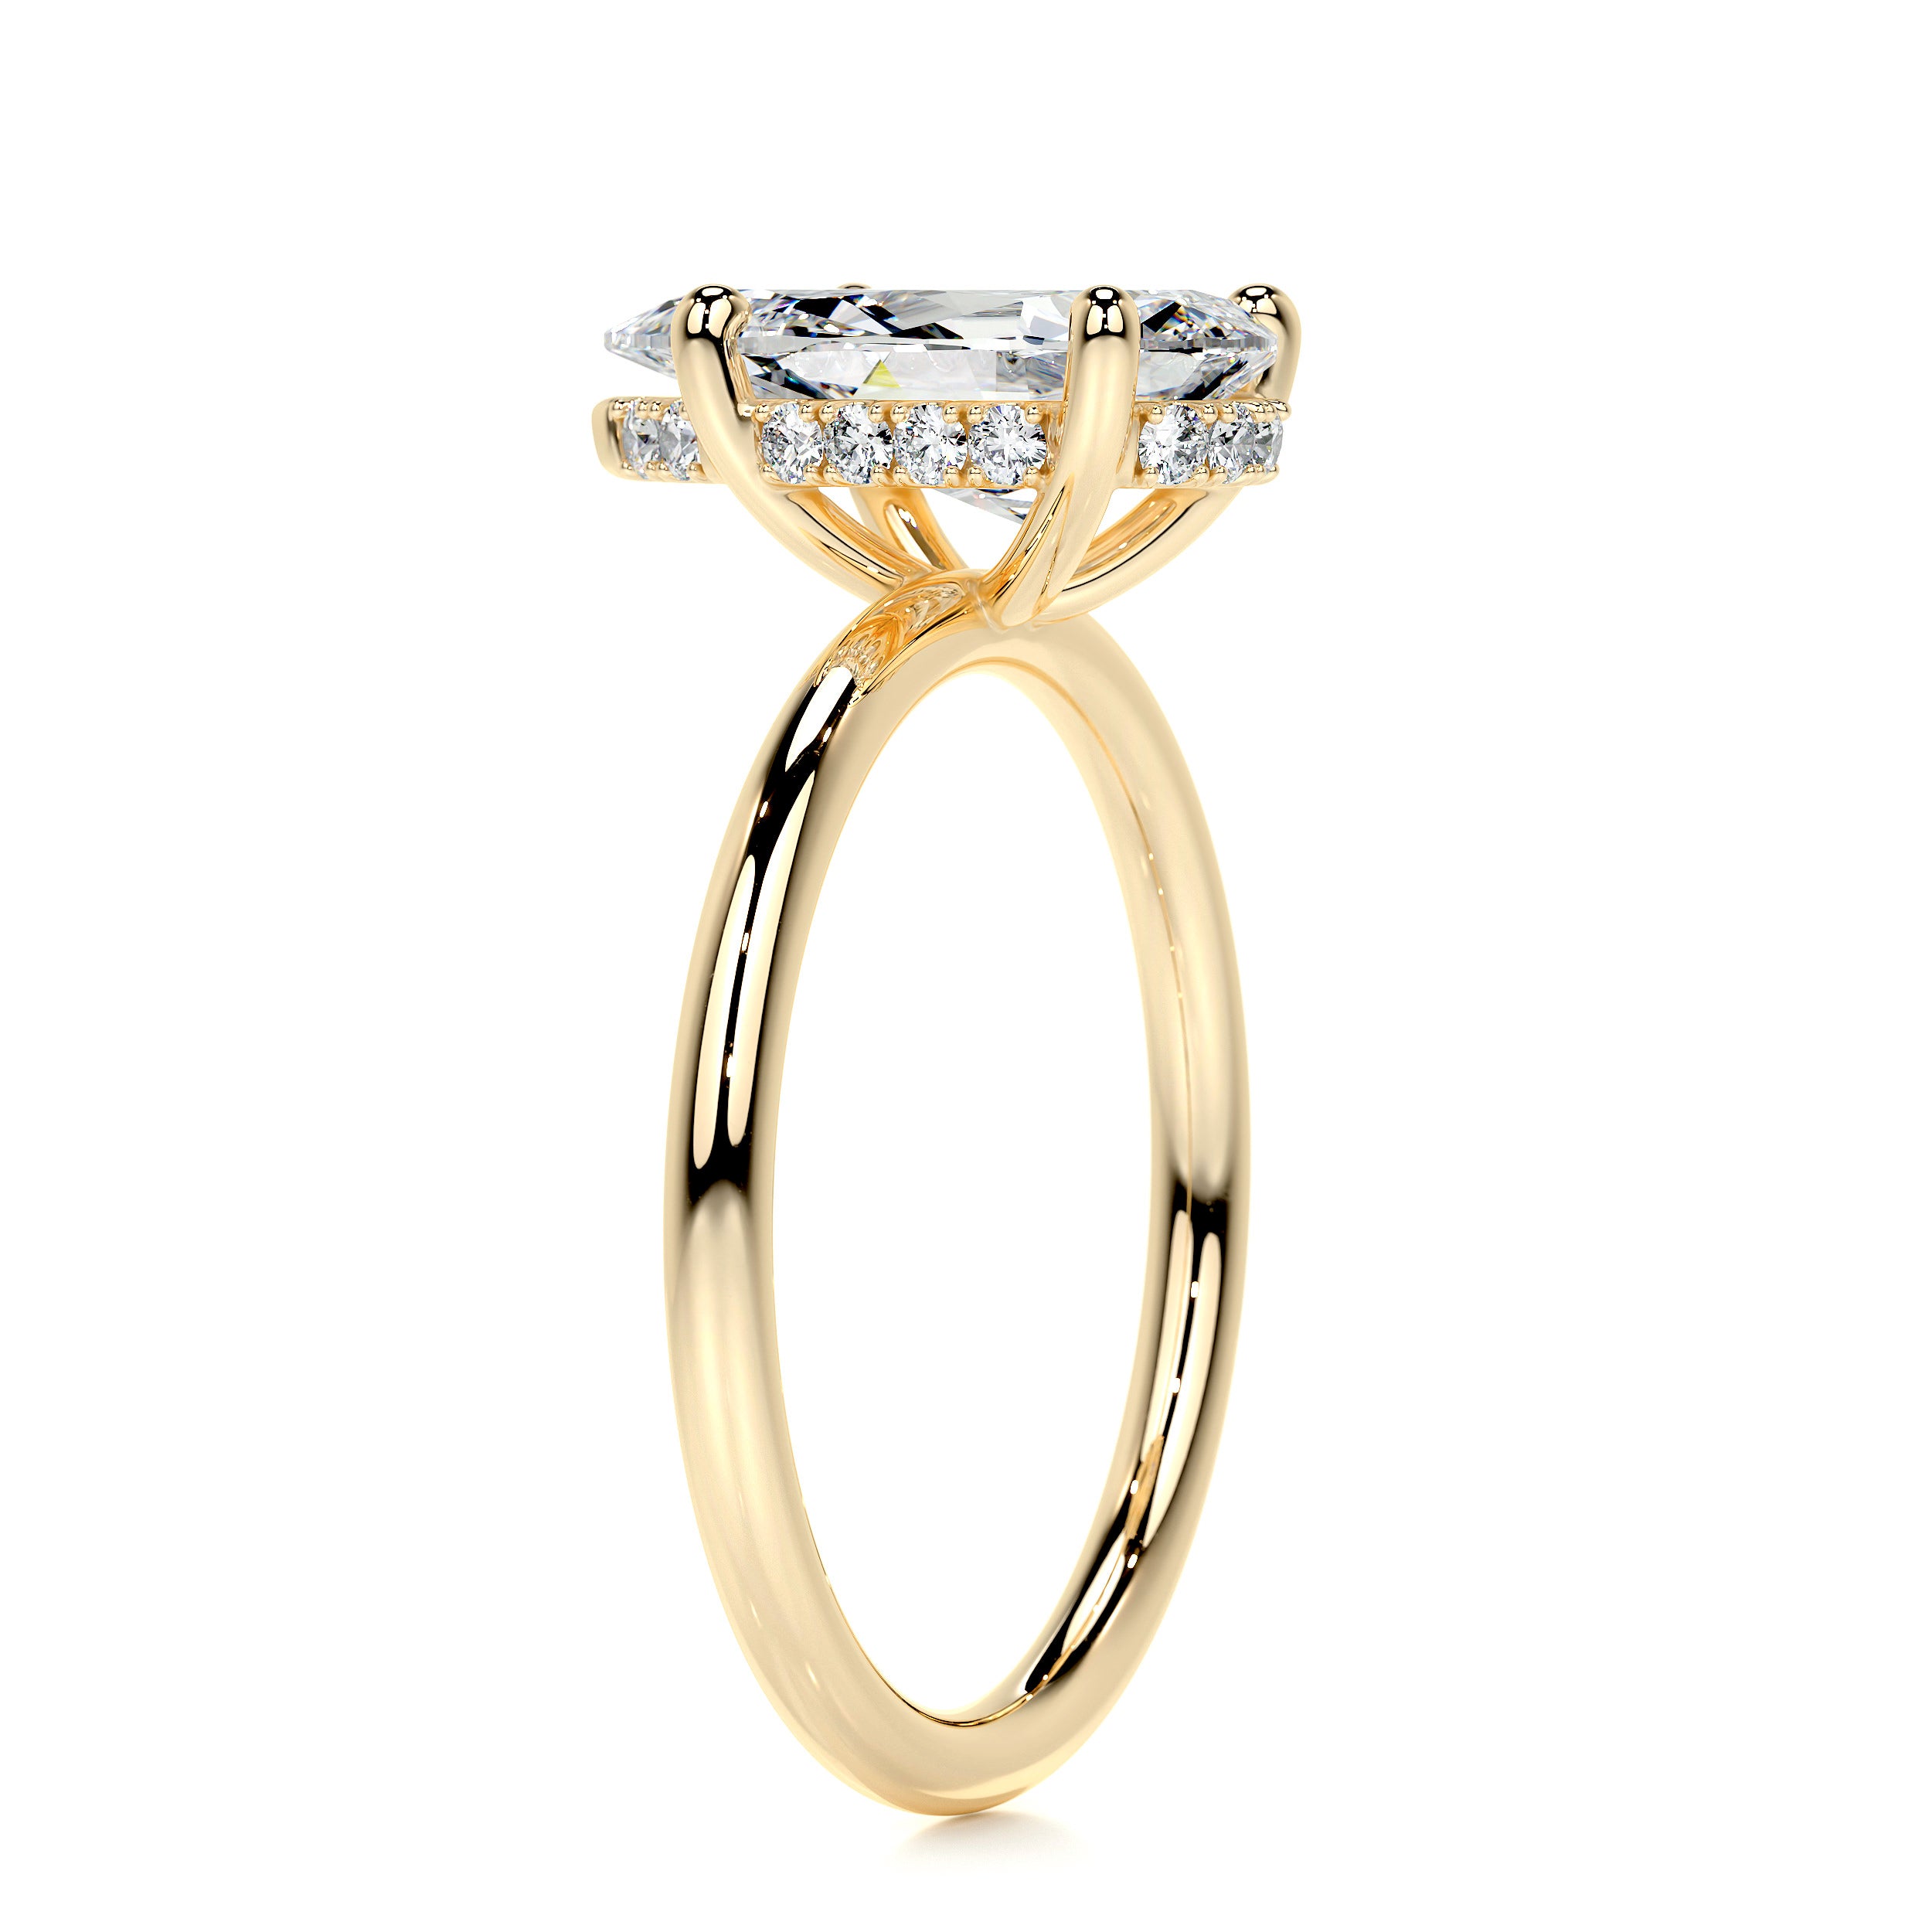 Willow Diamond Engagement Ring   (2.1 Carat) -18K Yellow Gold